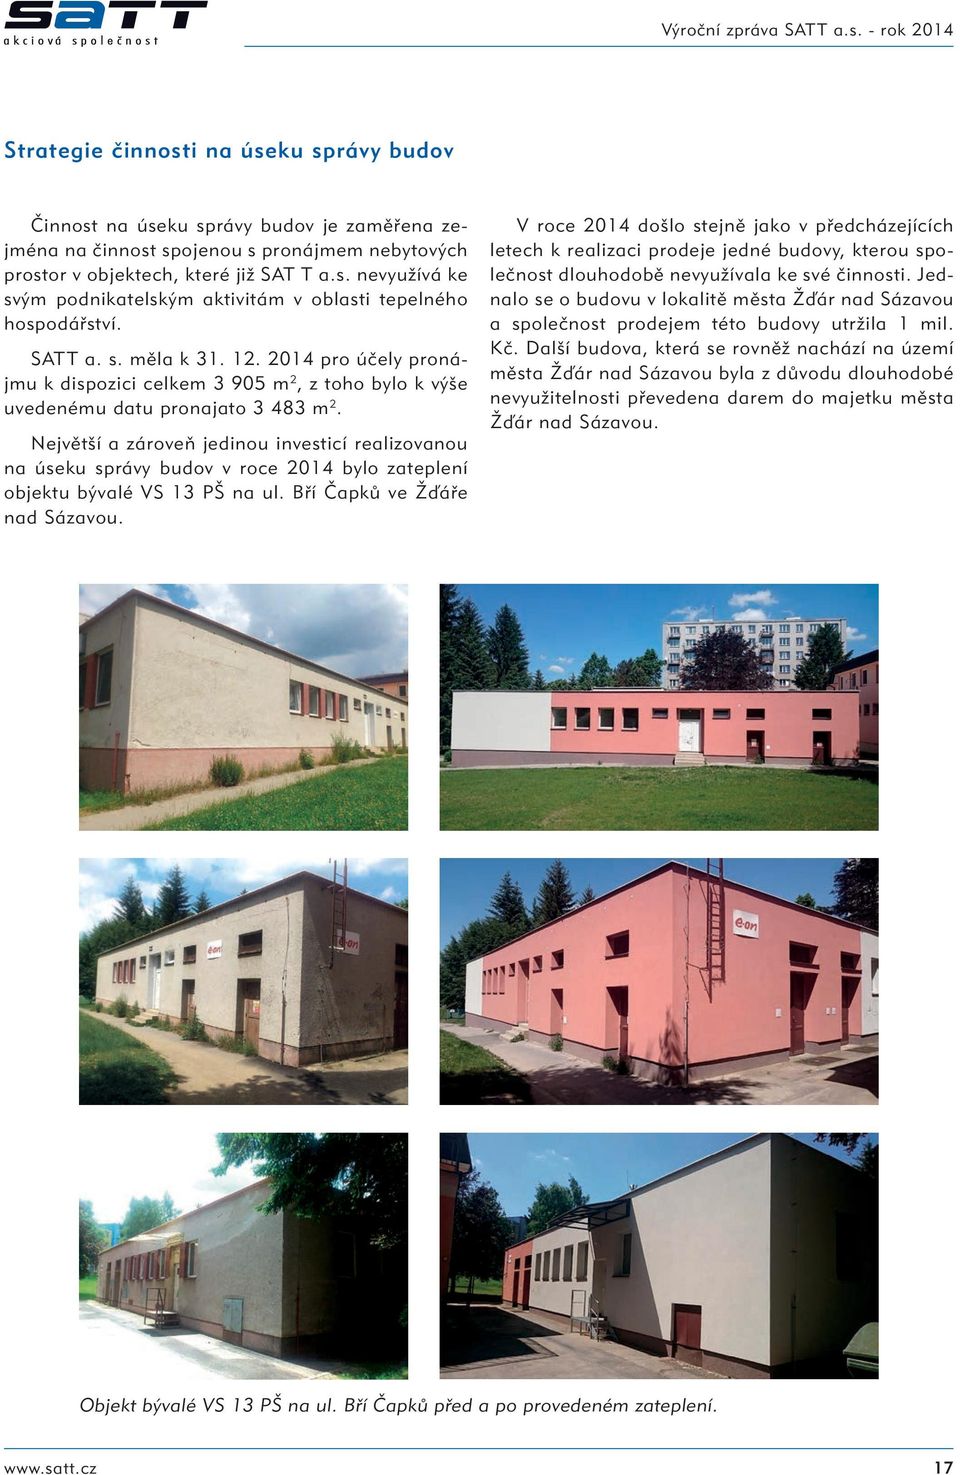 Největší a zároveň jedinou investicí realizovanou na úseku správy budov v roce 2014 bylo zateplení objektu bývalé VS 13 PŠ na ul. Bří Čapků ve Žďáře nad Sázavou.